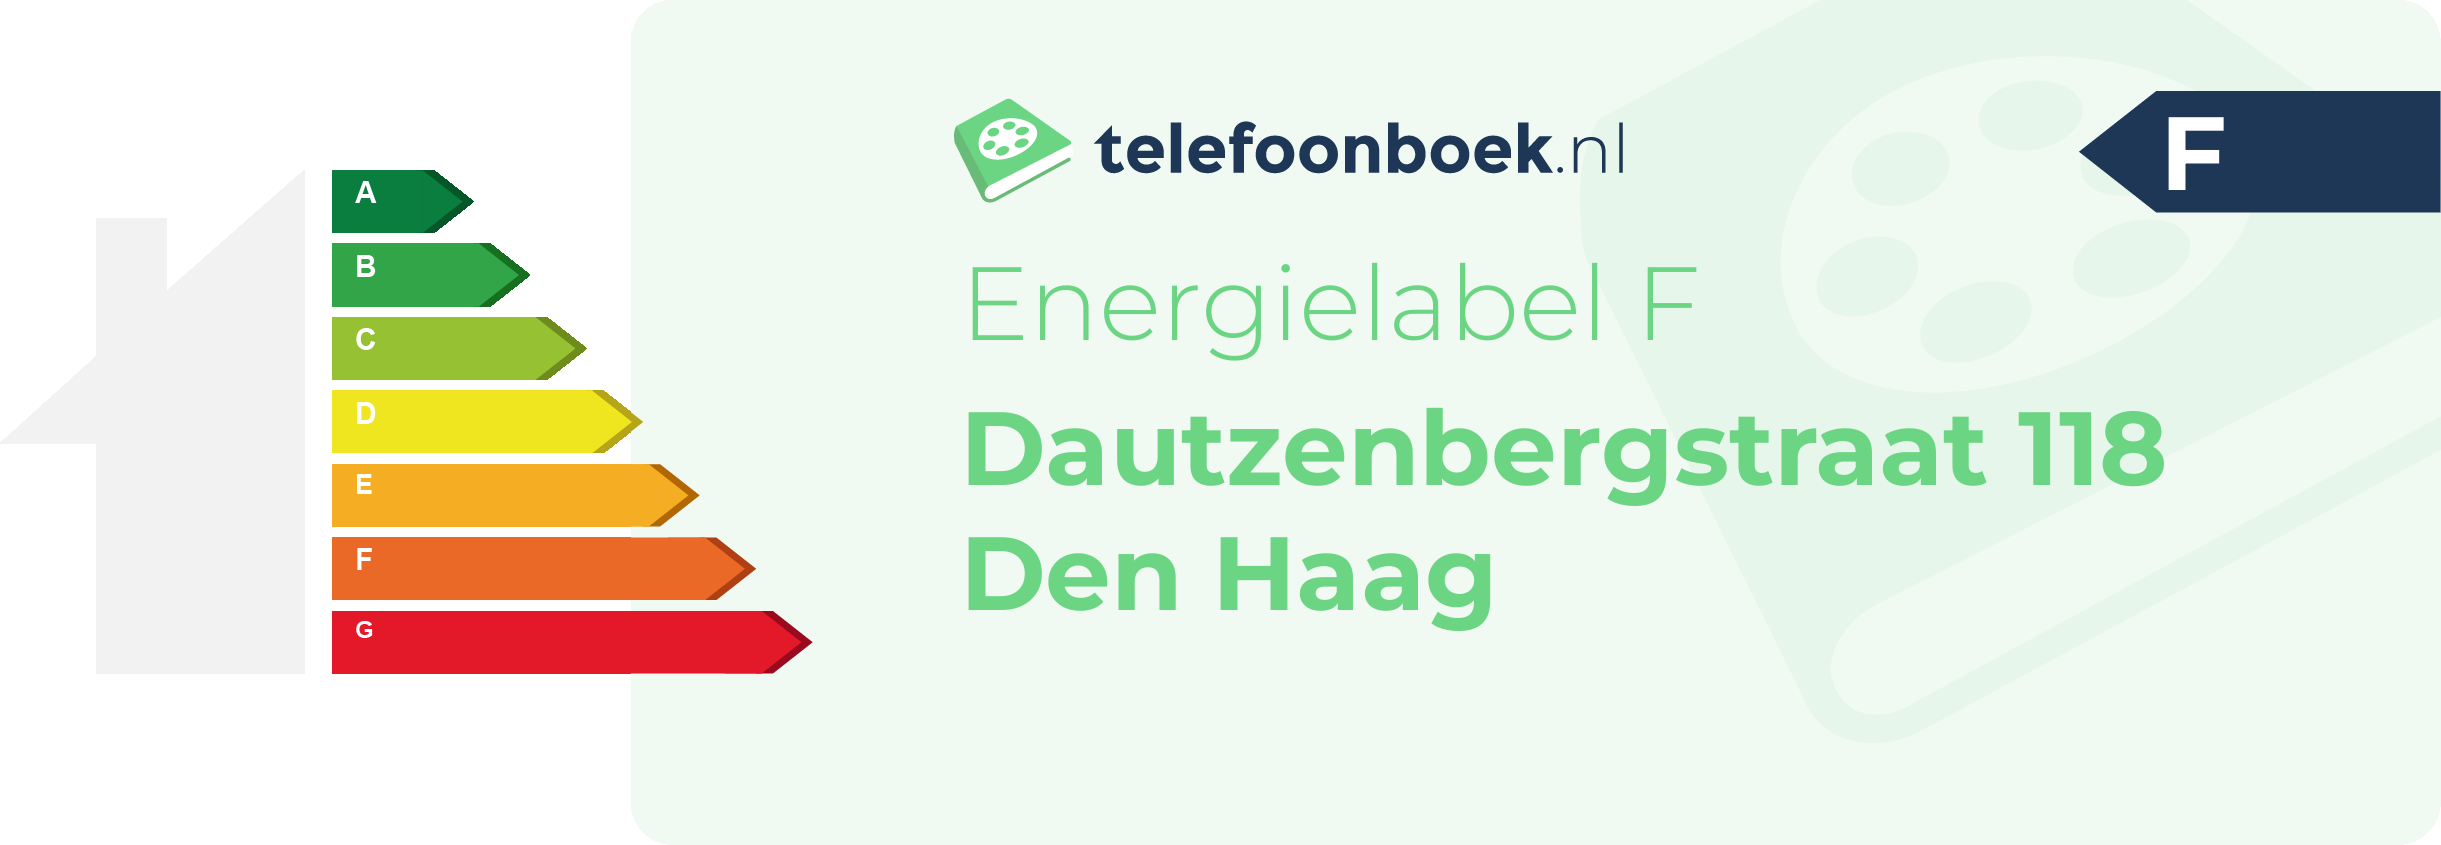 Energielabel Dautzenbergstraat 118 Den Haag